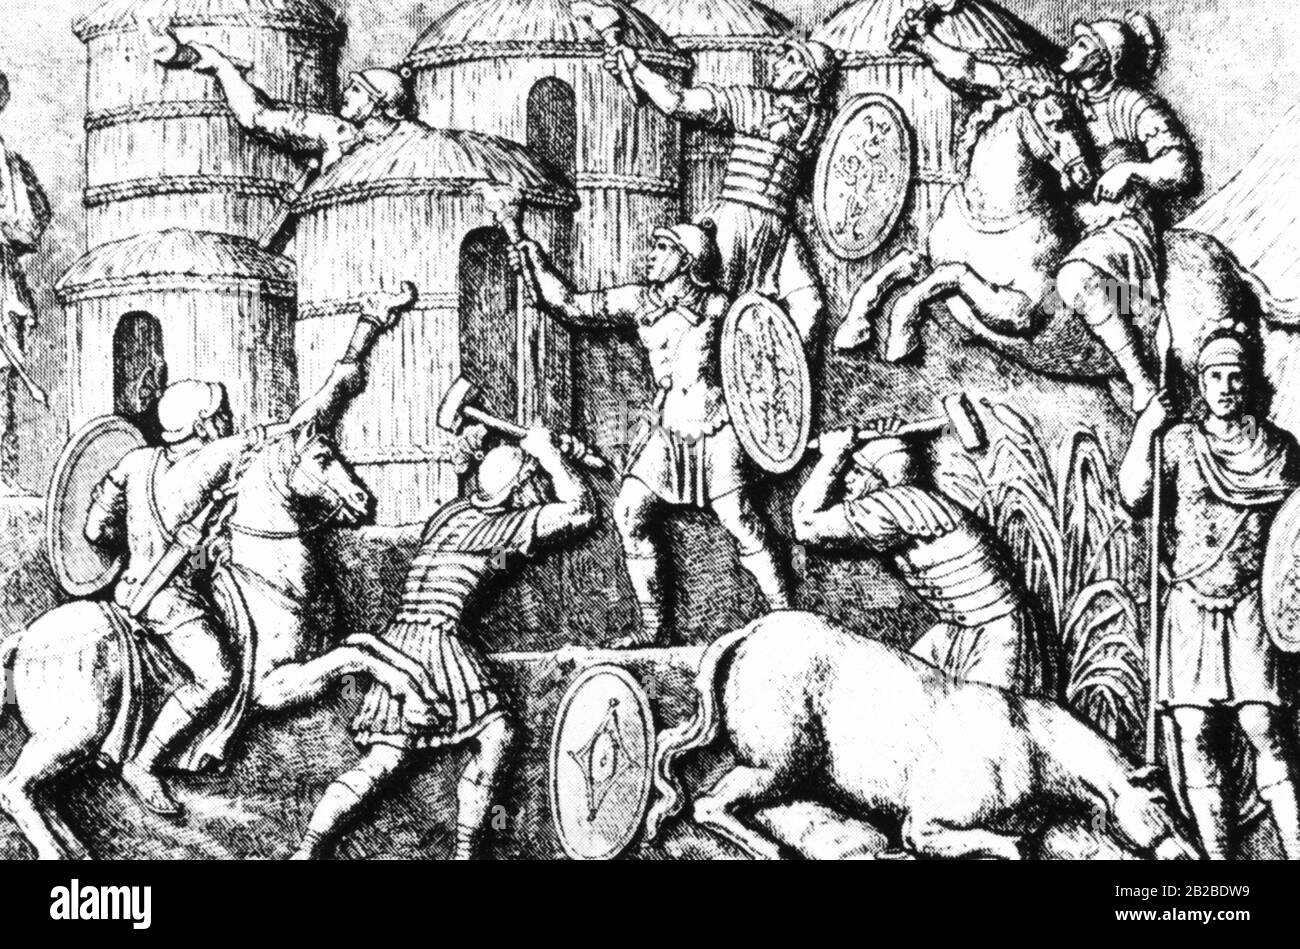 Diese zeitgenössische Erleichterung zeigt römische Legionäre, die ein deutsches Dorf in Brand gesteckt haben, nachdem sie ihre Einwohner getötet oder gefangen genommen hatten. Der Widerstand gegen die römische Herrschaft wurde immer mit diesen Methoden gebrochen. Stockfoto